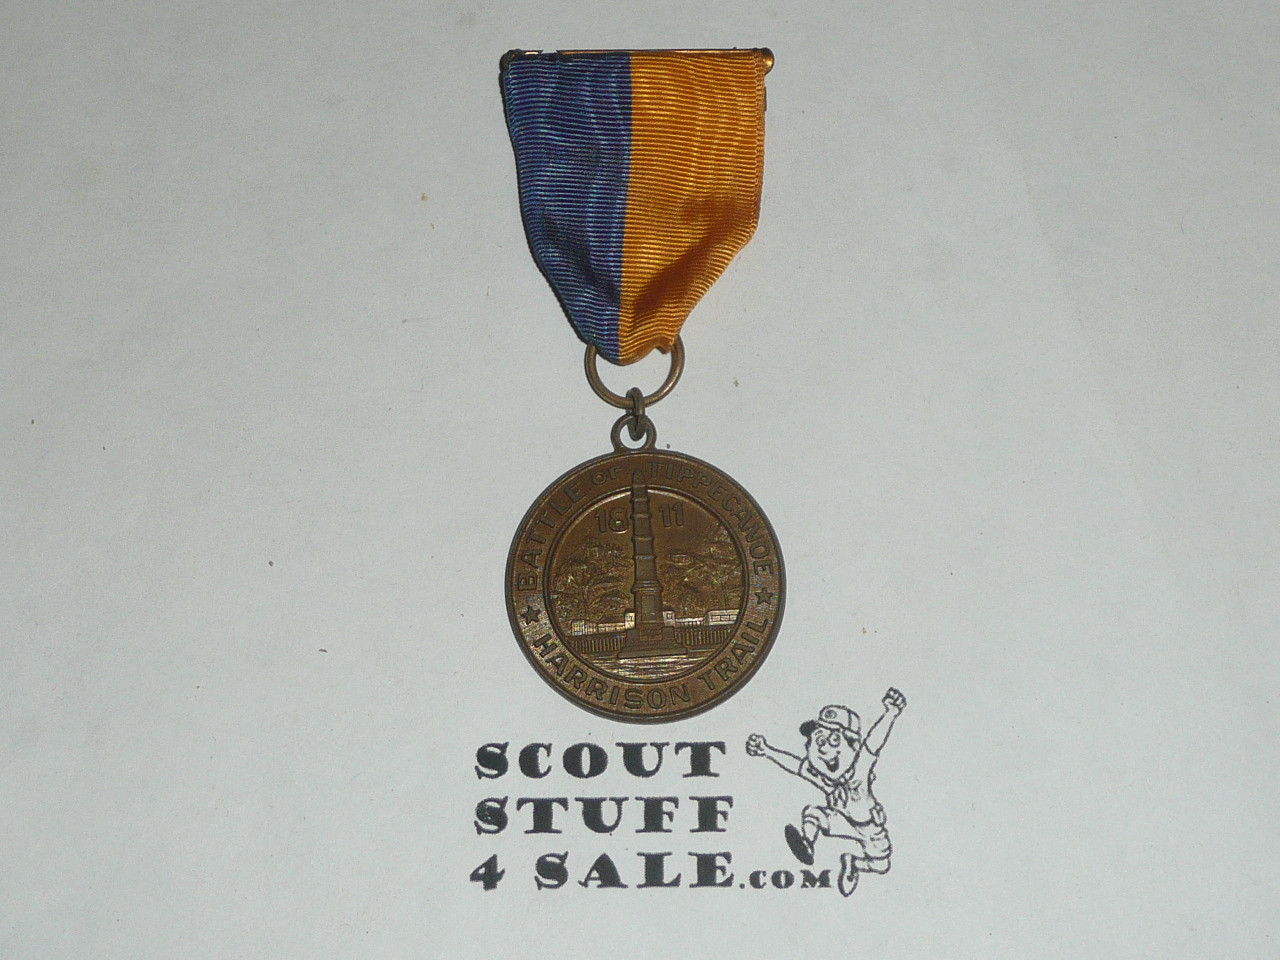 Harrison Trail Medal, Battle of Tippecanoe